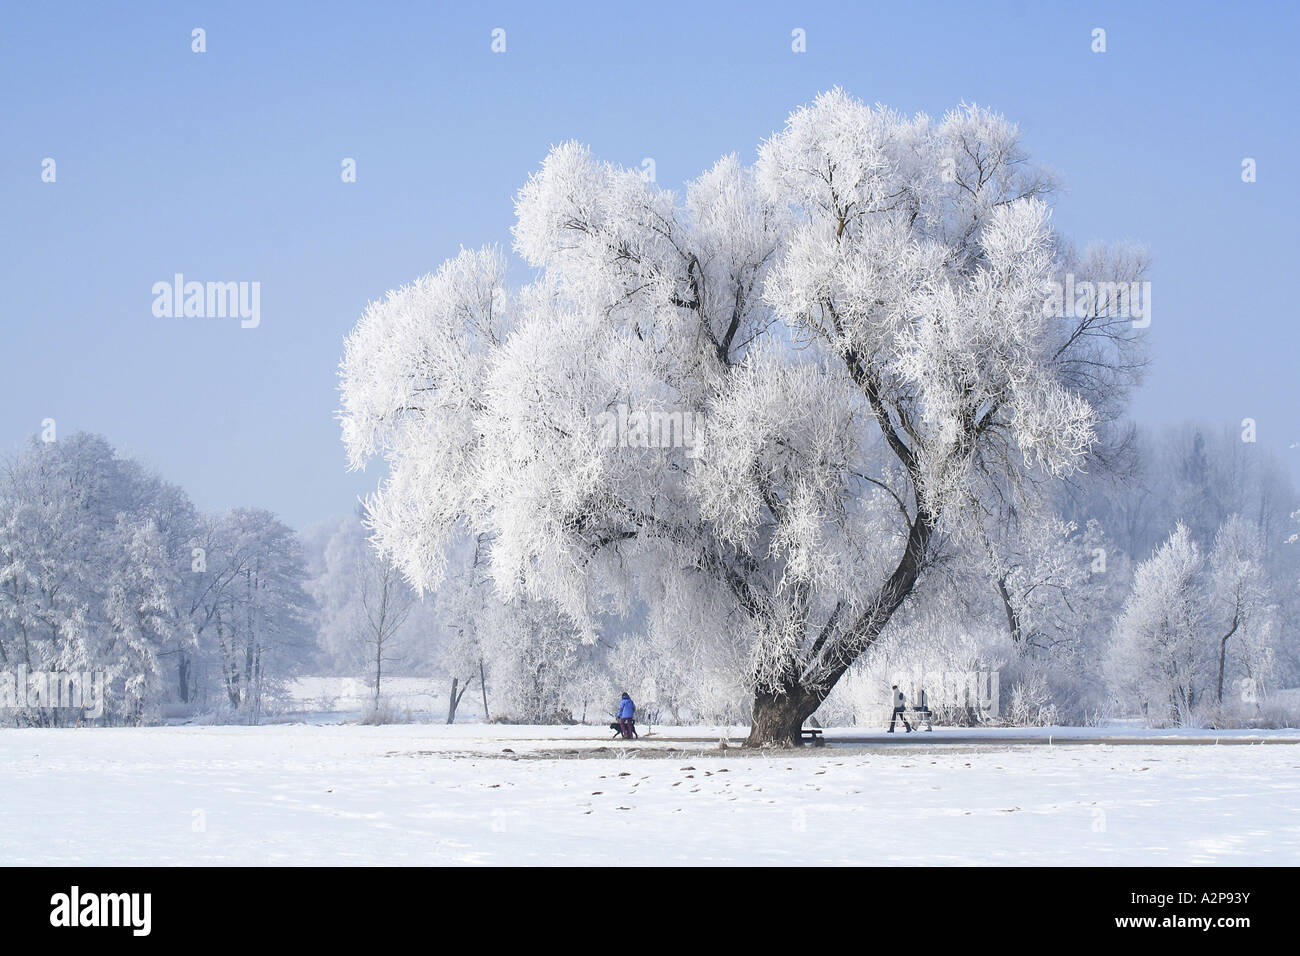 weiße Weide (Salix Alba), 100 Jahre alt in Winterlandschaft mit Raureif, Deutschland, Bayern Stockfoto